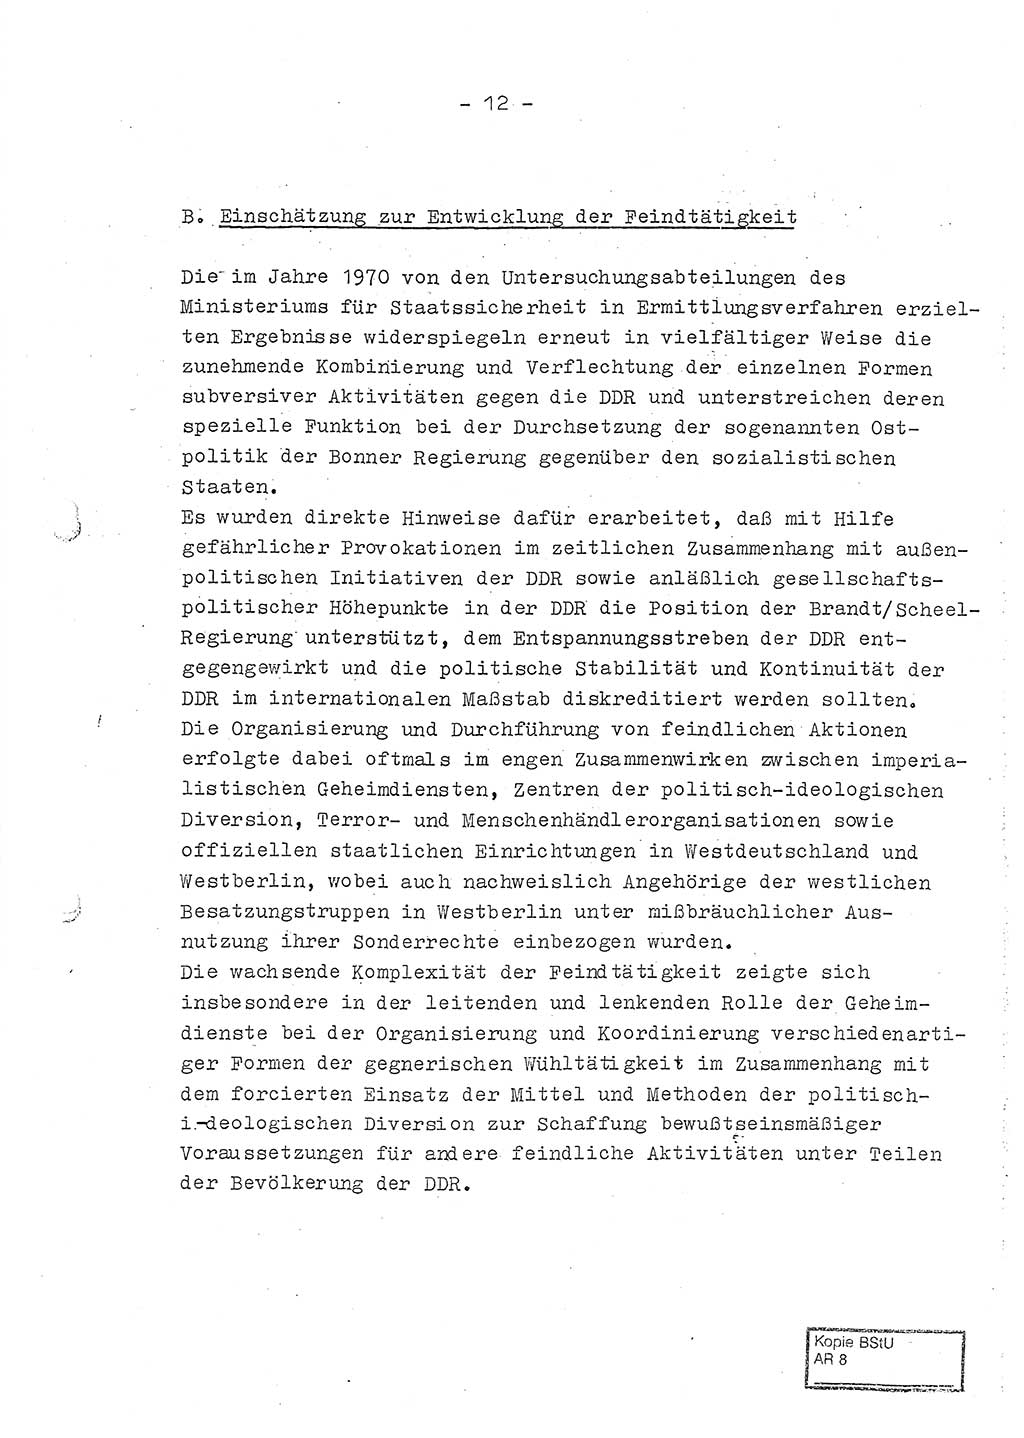 Jahresbericht der Hauptabteilung (HA) Ⅸ 1970, Ministerium für Staatssicherheit (MfS) der Deutschen Demokratischen Republik (DDR), Berlin 1971, Seite 12 (J.-Ber. MfS DDR HA Ⅸ /70 1971, S. 12)